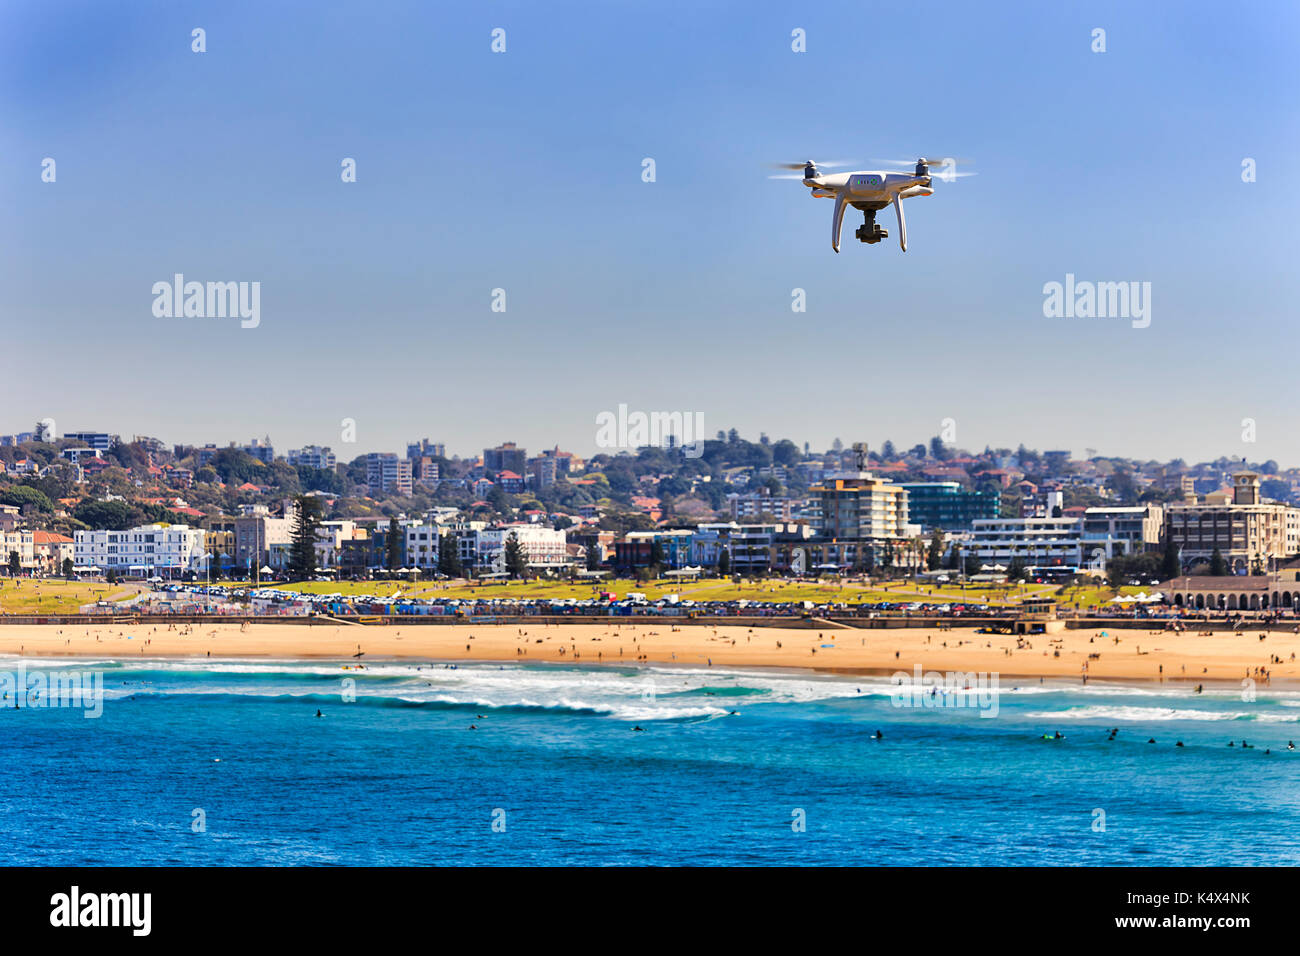 Fliegenden quadrocopter über Sand Linie der berühmten australischen Bondi Beach in Sydney. Aktive Menschen Schwimmen, Surfen und Entspannen im ikonischen Touristische destinat Stockfoto